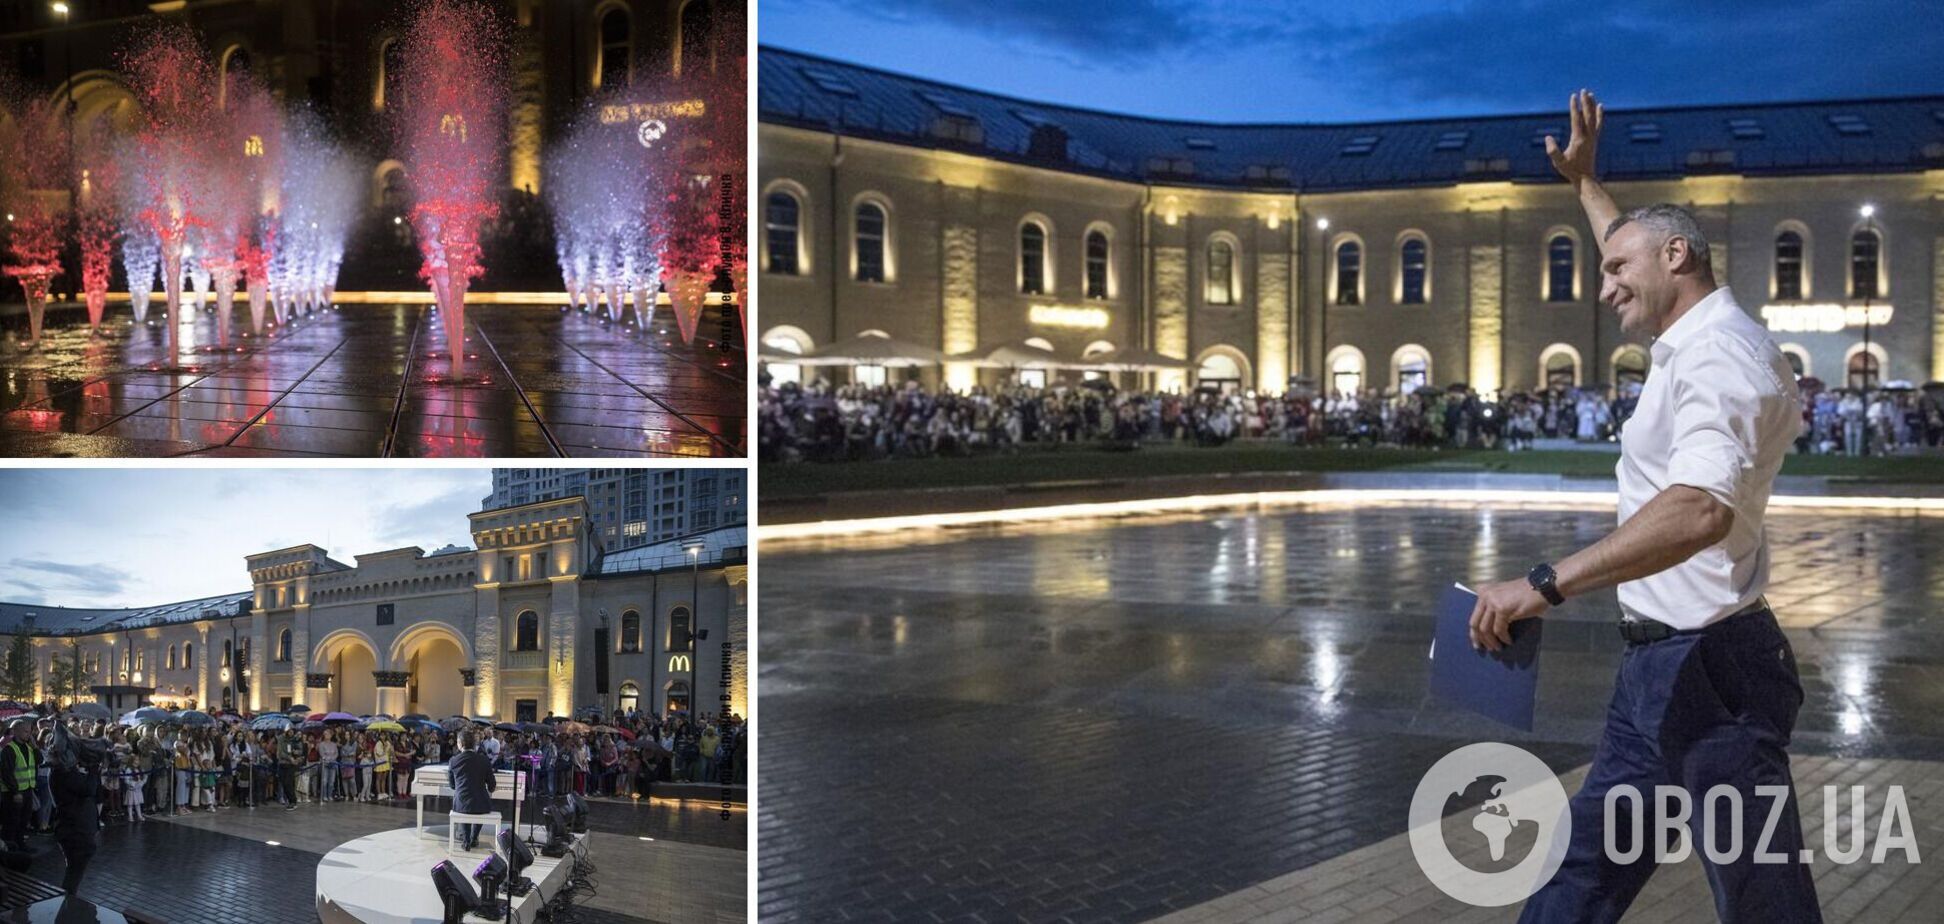 Кличко відкрив новий громадський простір на Арсенальній площі